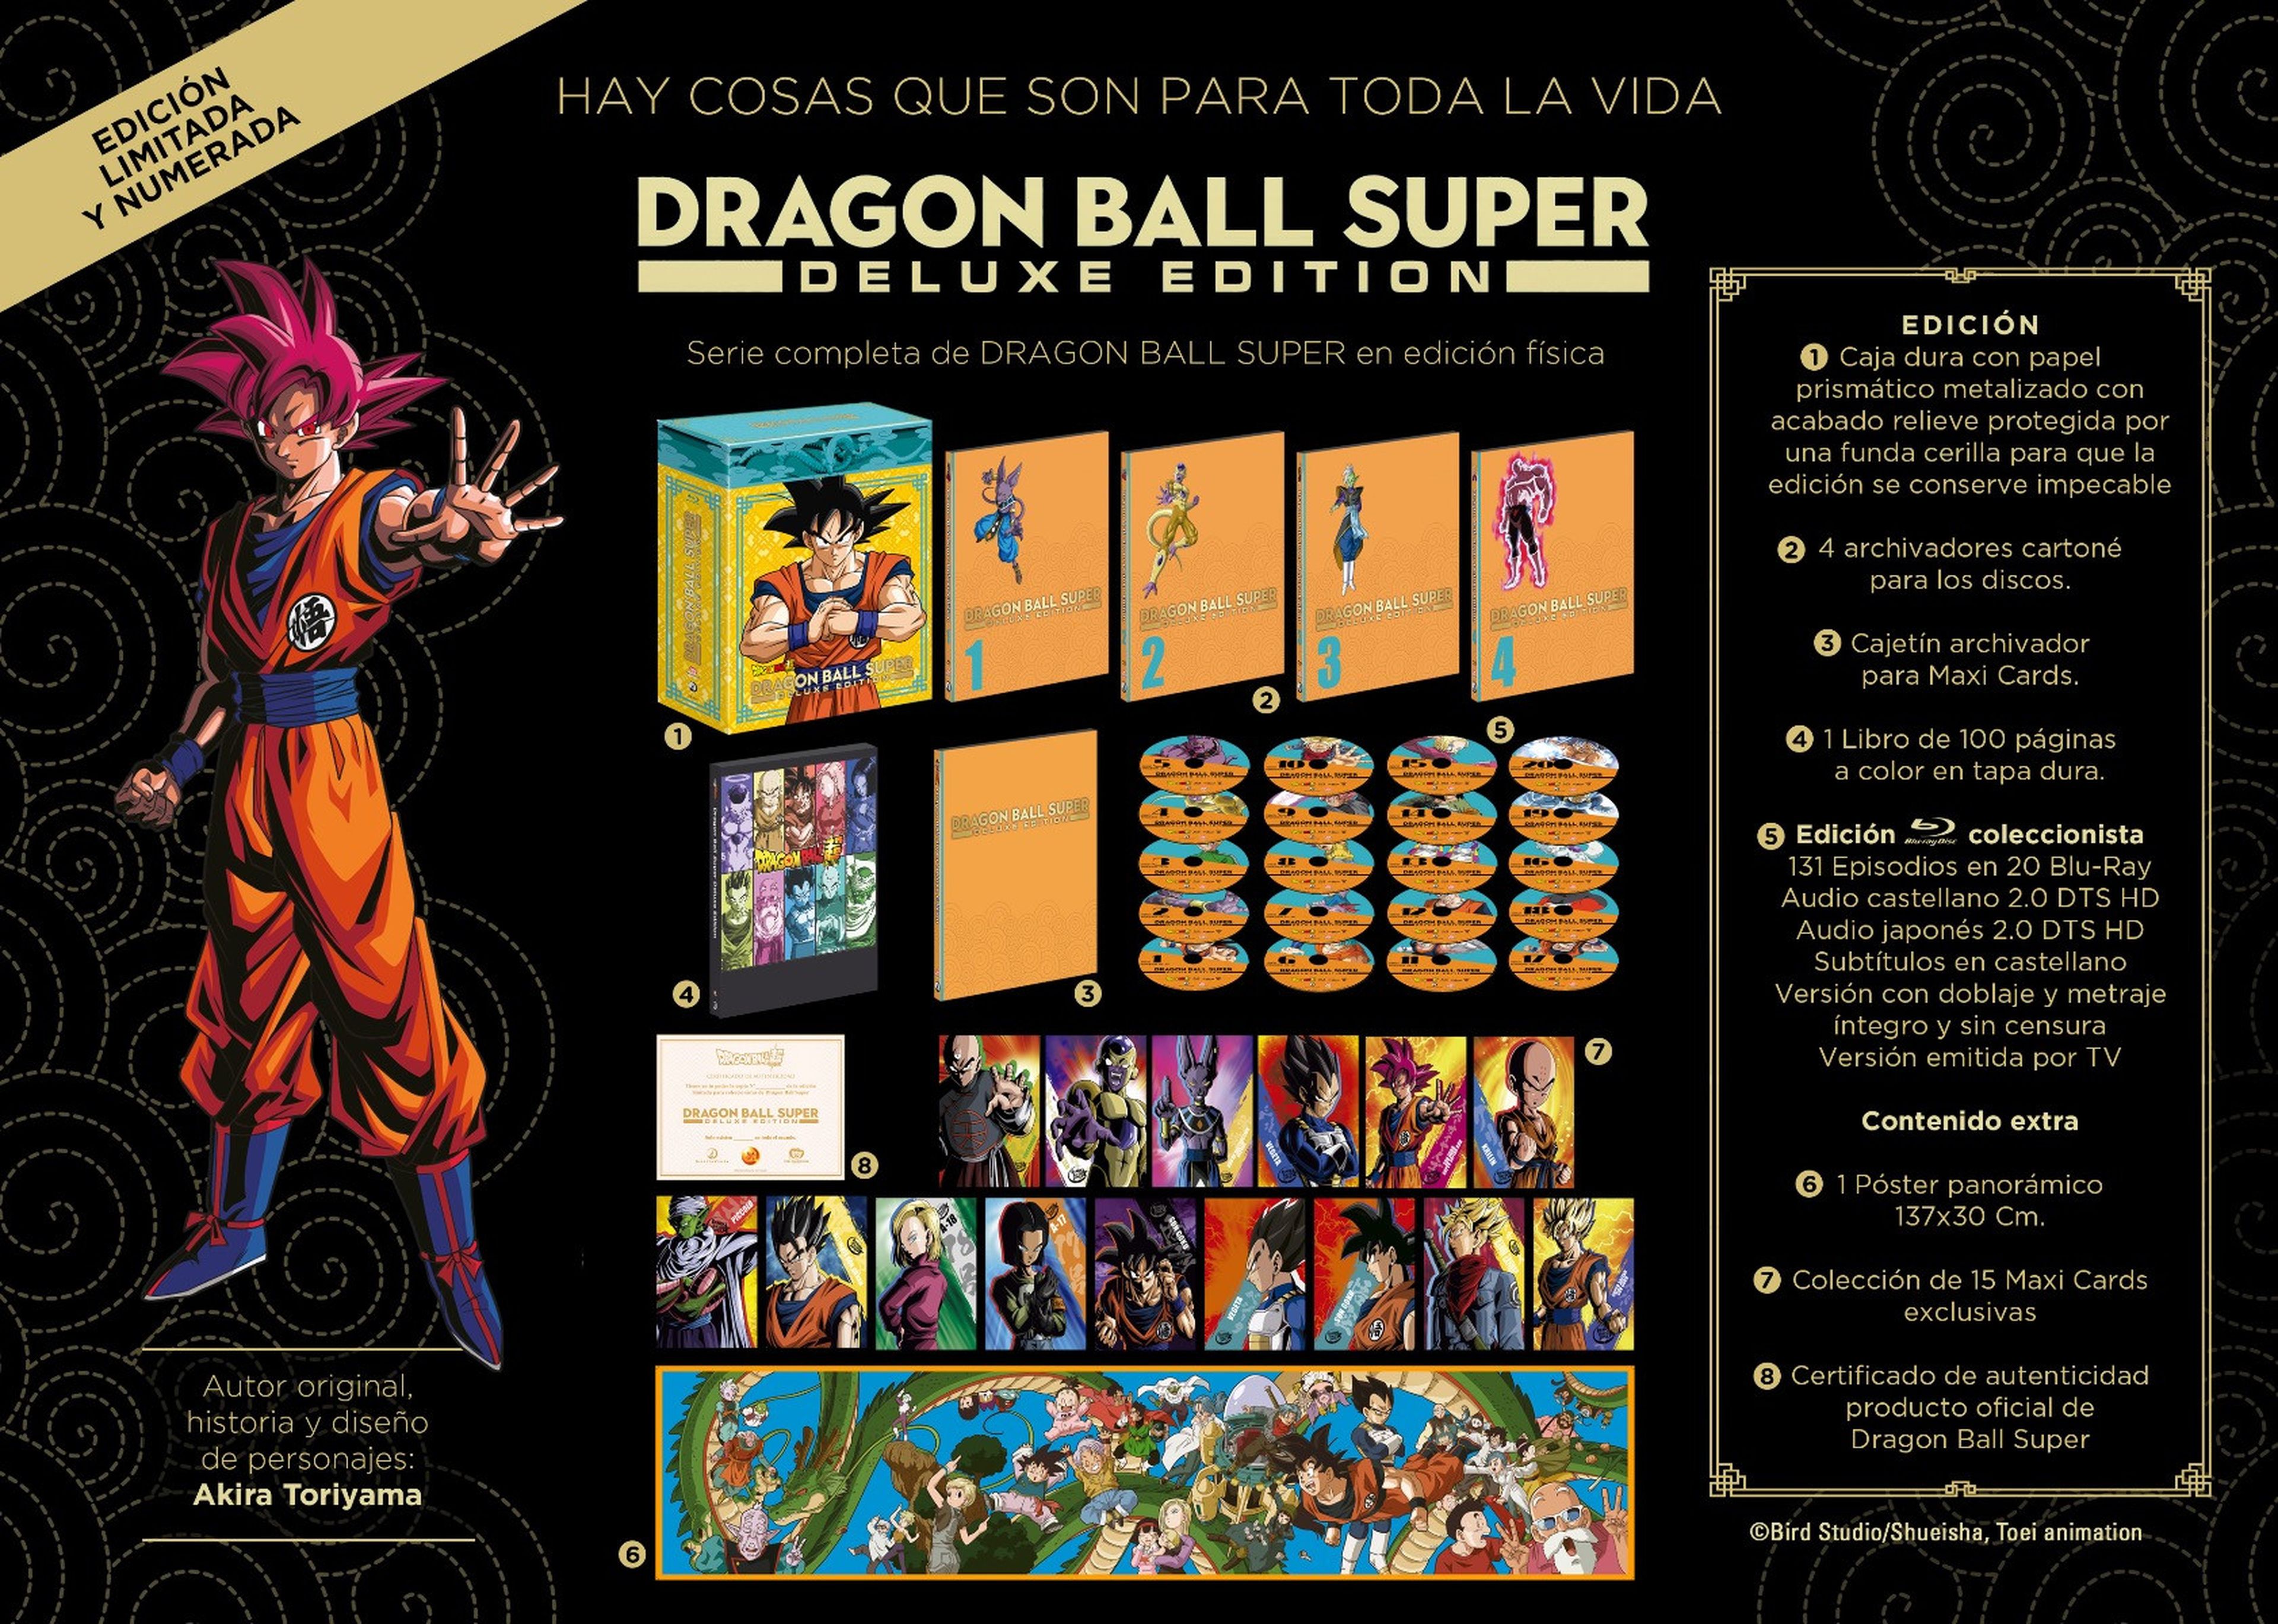 Dragon Ball Super - Desvelada la segunda edición coleccionista de la serie, limitada y numerada, de Selecta Visión. ¡Otro formato de auténtico lujo!